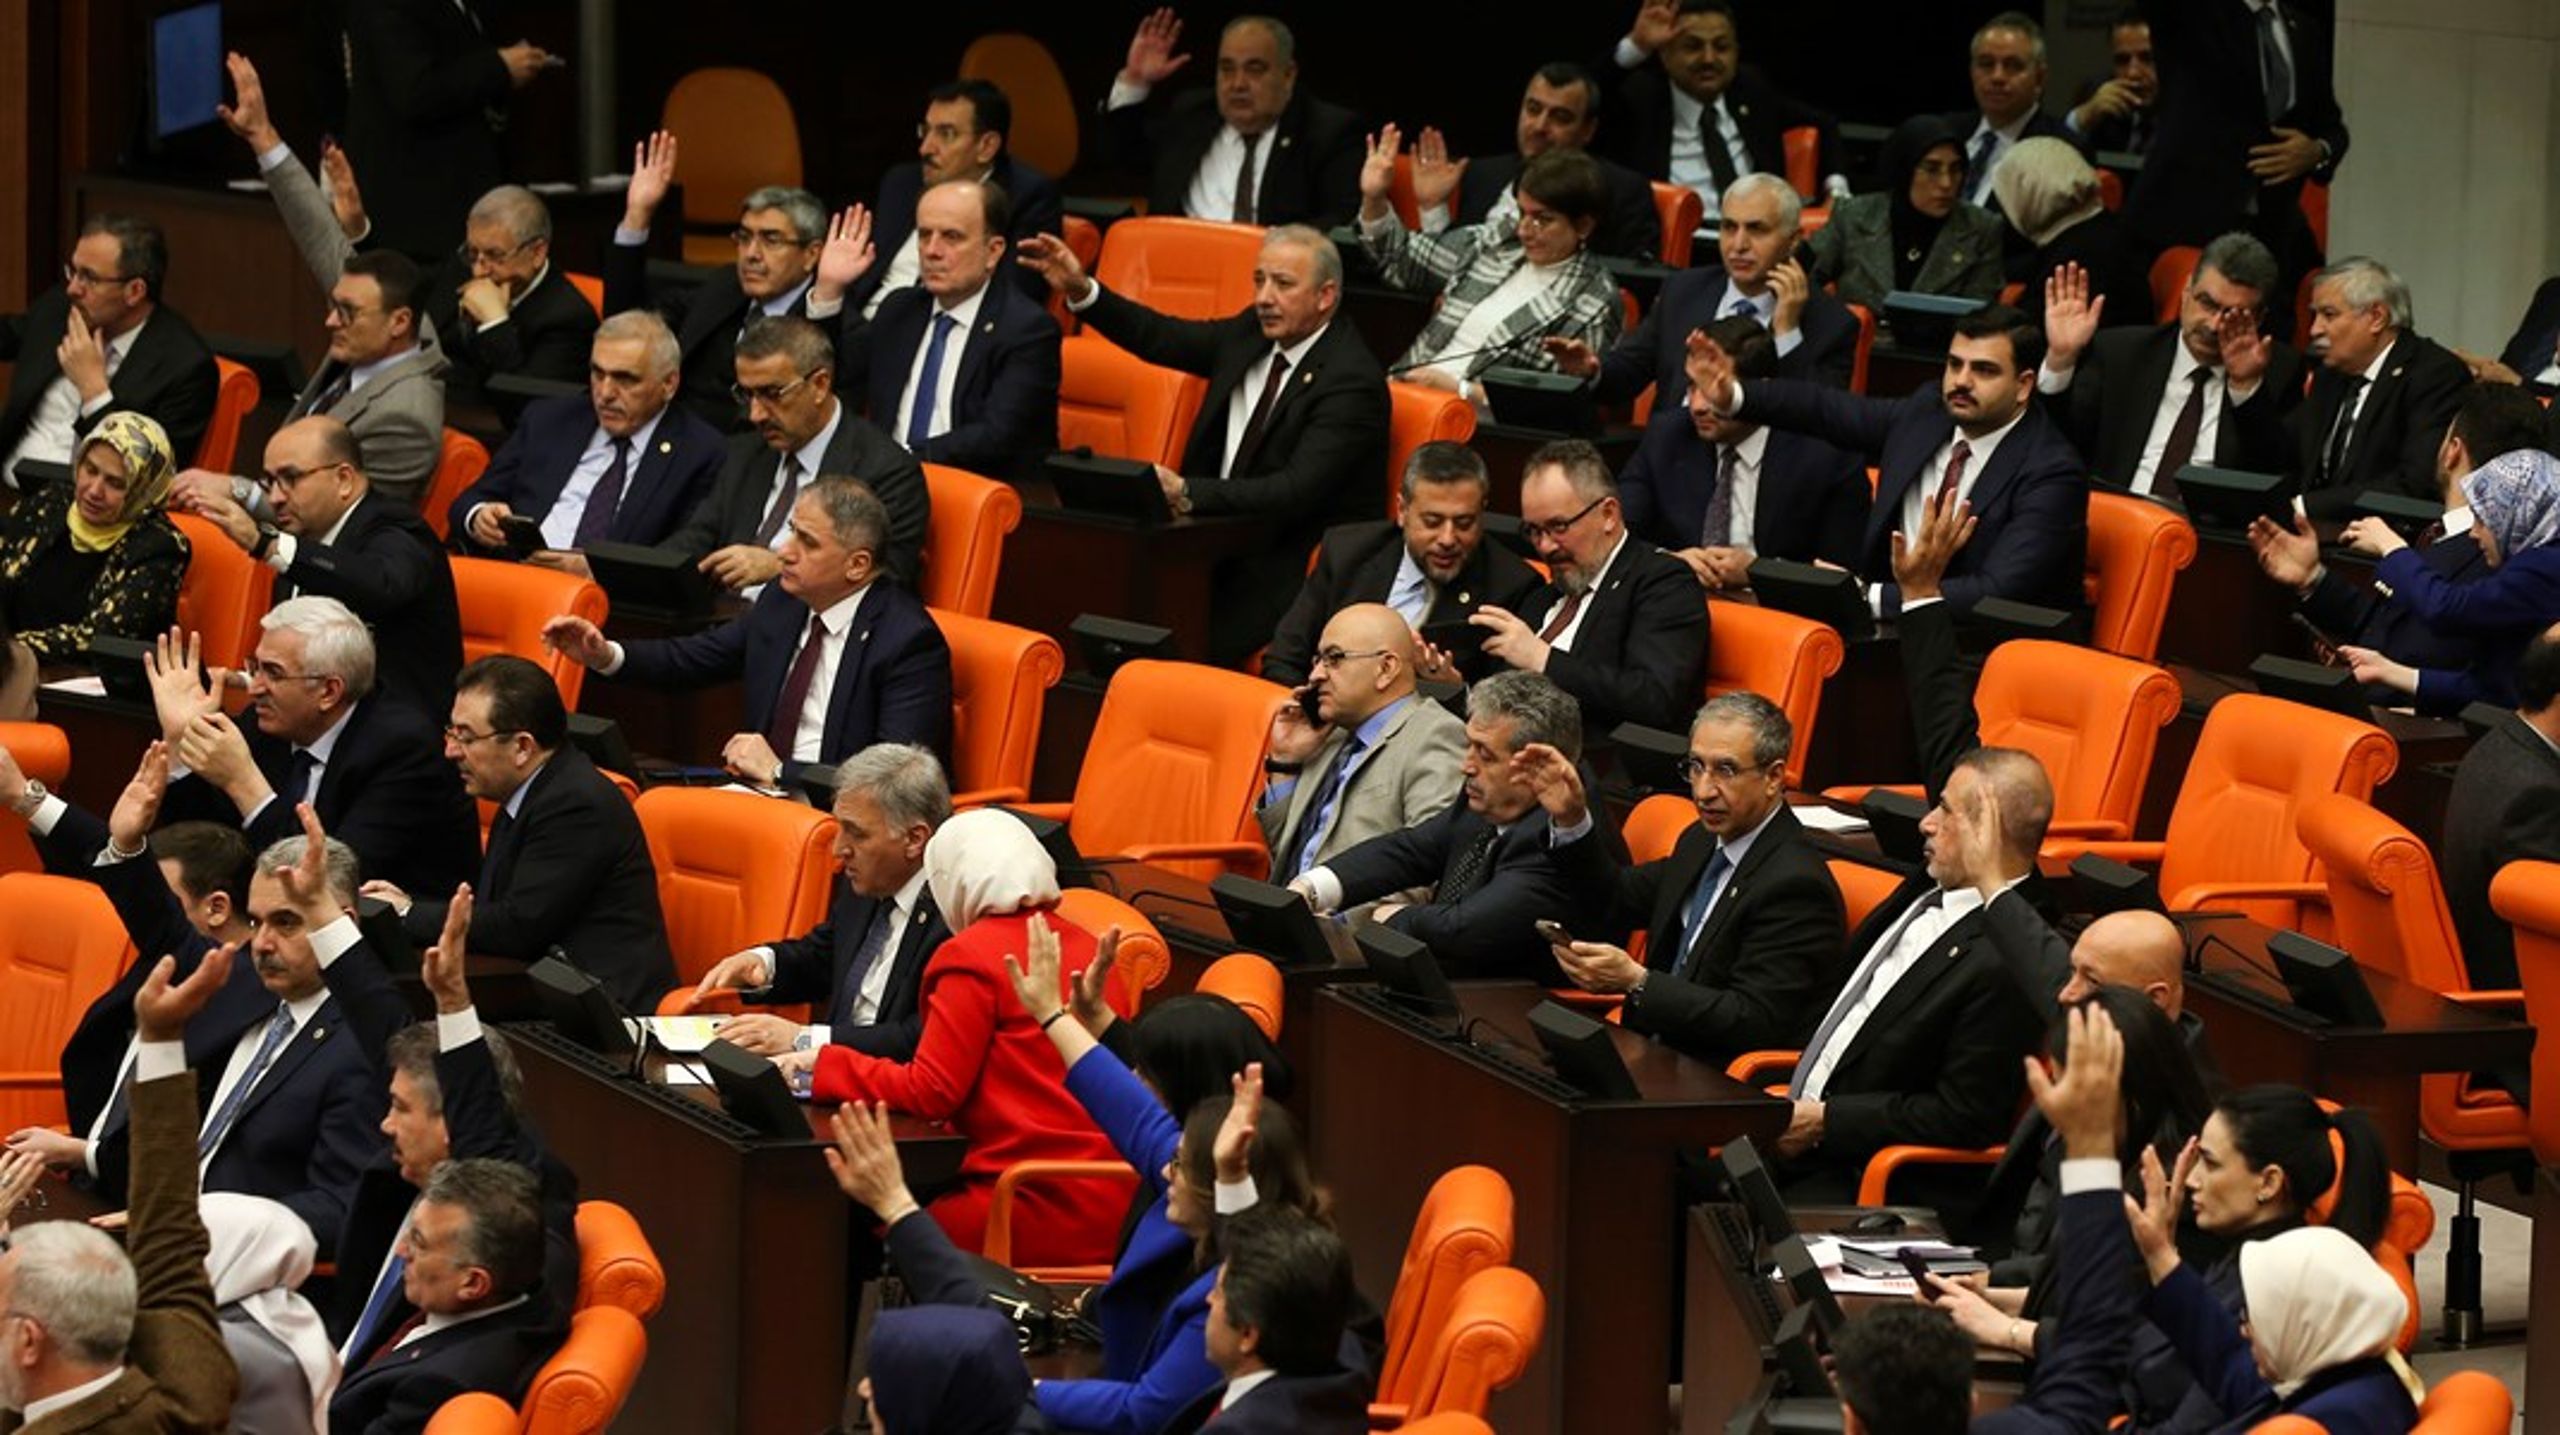 Fyra timmars debatt, sedan sade Turkiets parlament ja till att Sverige går med i Nato.